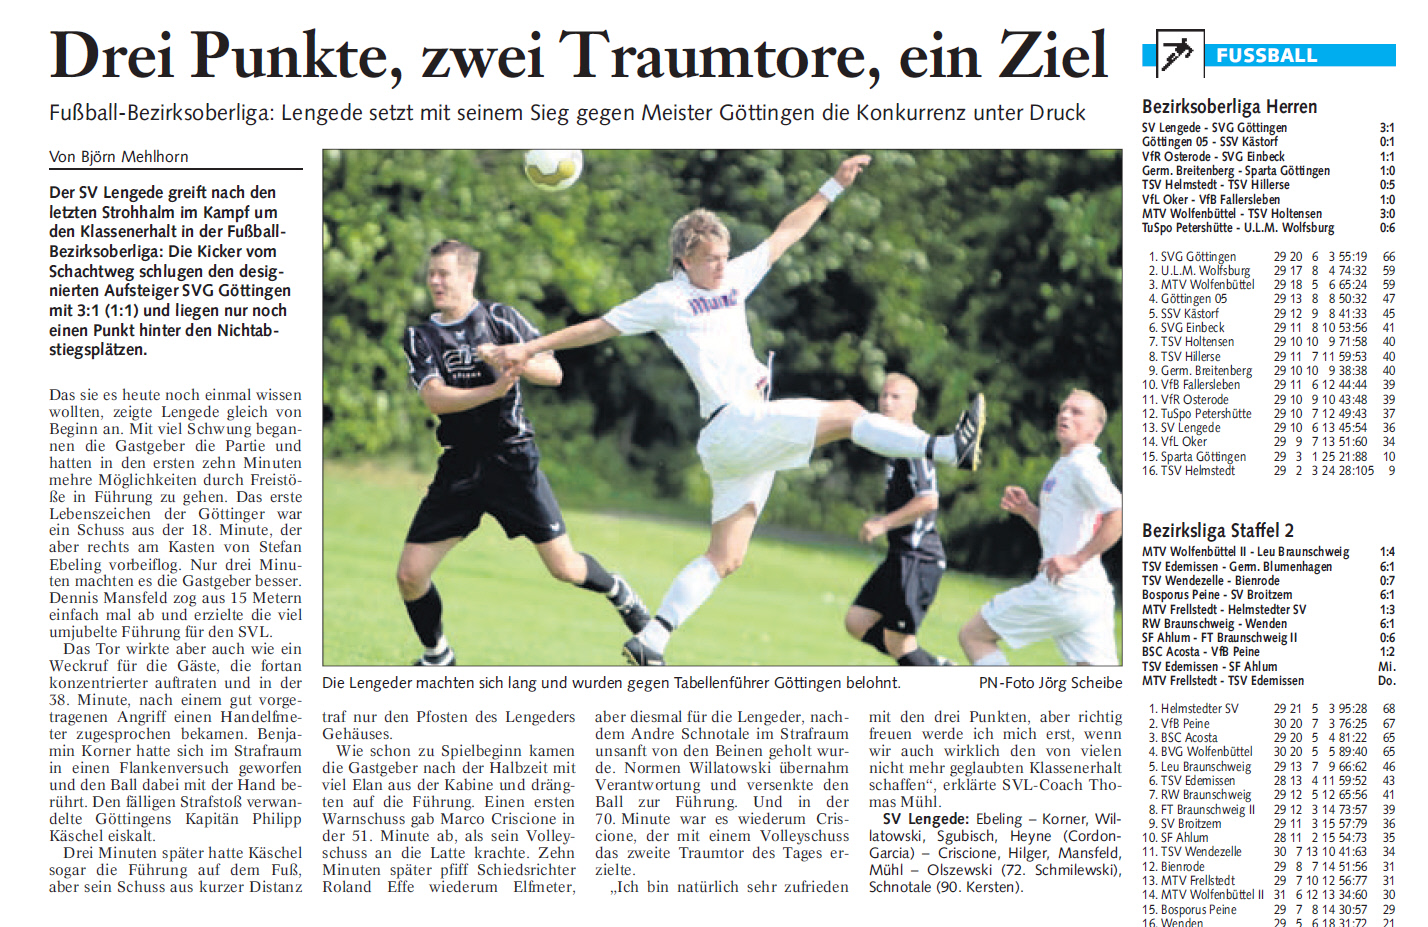 20090525.fussball.bericht.heimspiel.svg.pn